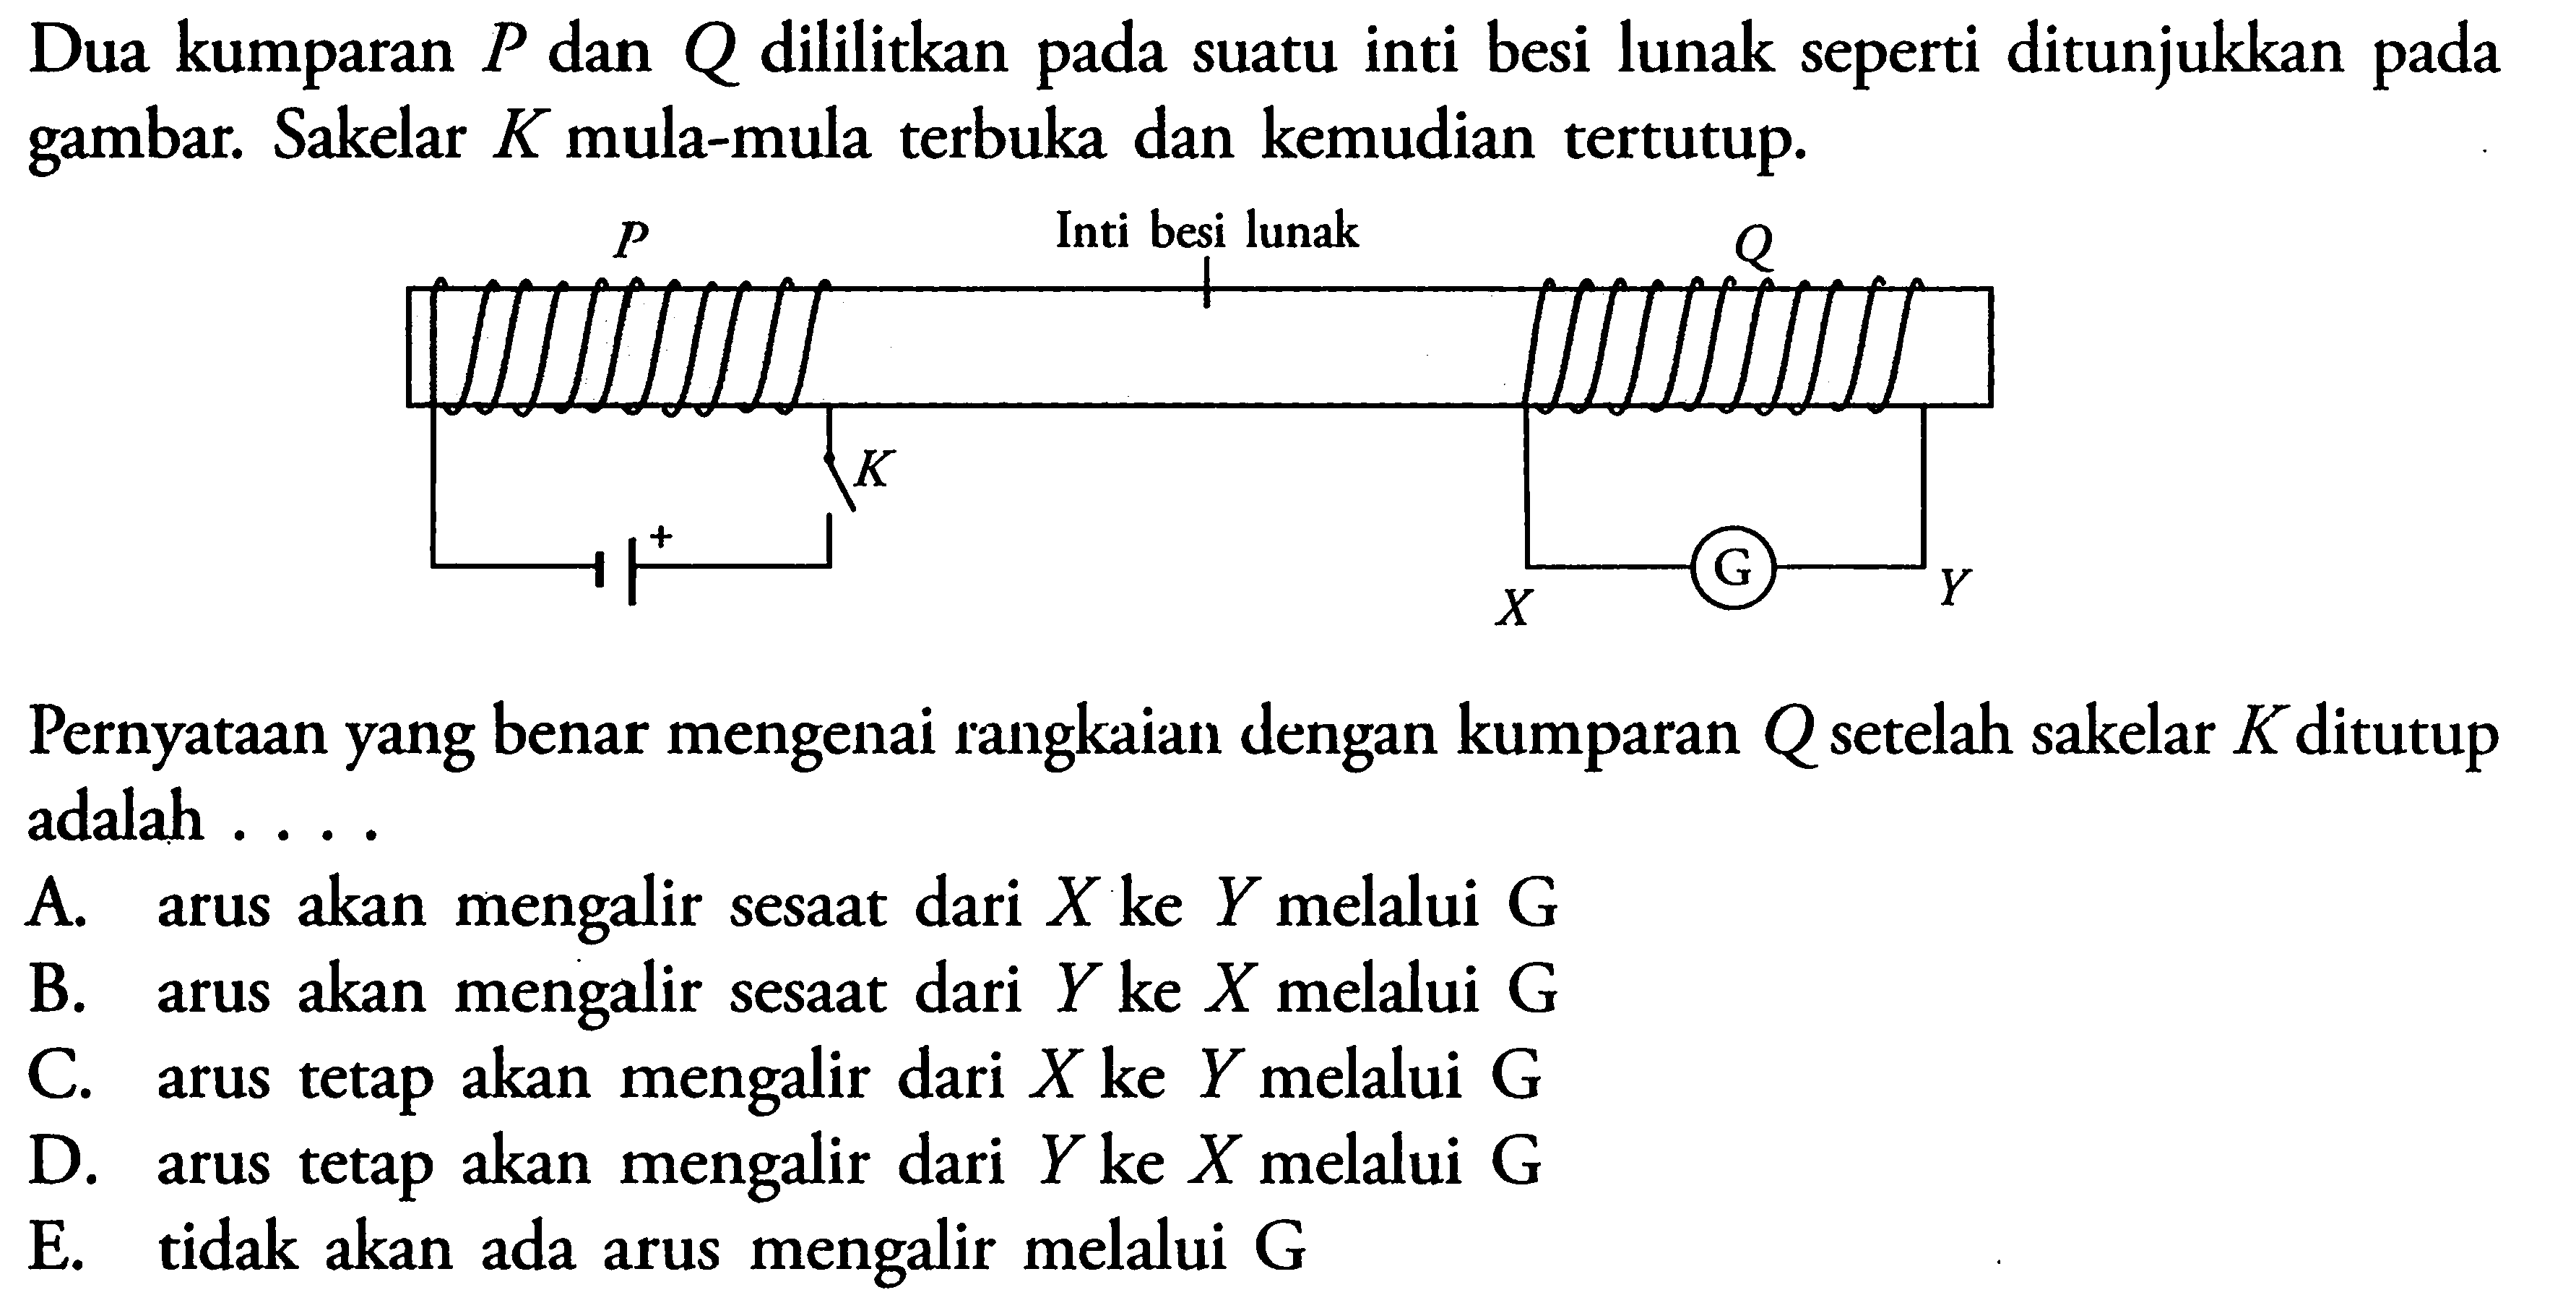 Dua kumparan  P  dan  Q  dililitkan pada suatu inti besi lunak seperti ditunjukkan pada gambar. Sakelar  K  mula-mula terbuka dan kemudian tertutup. Pernyataan yang benar mengenai rangkaian dengan kumparan Q setelah sakelar K ditutup adalah .... 